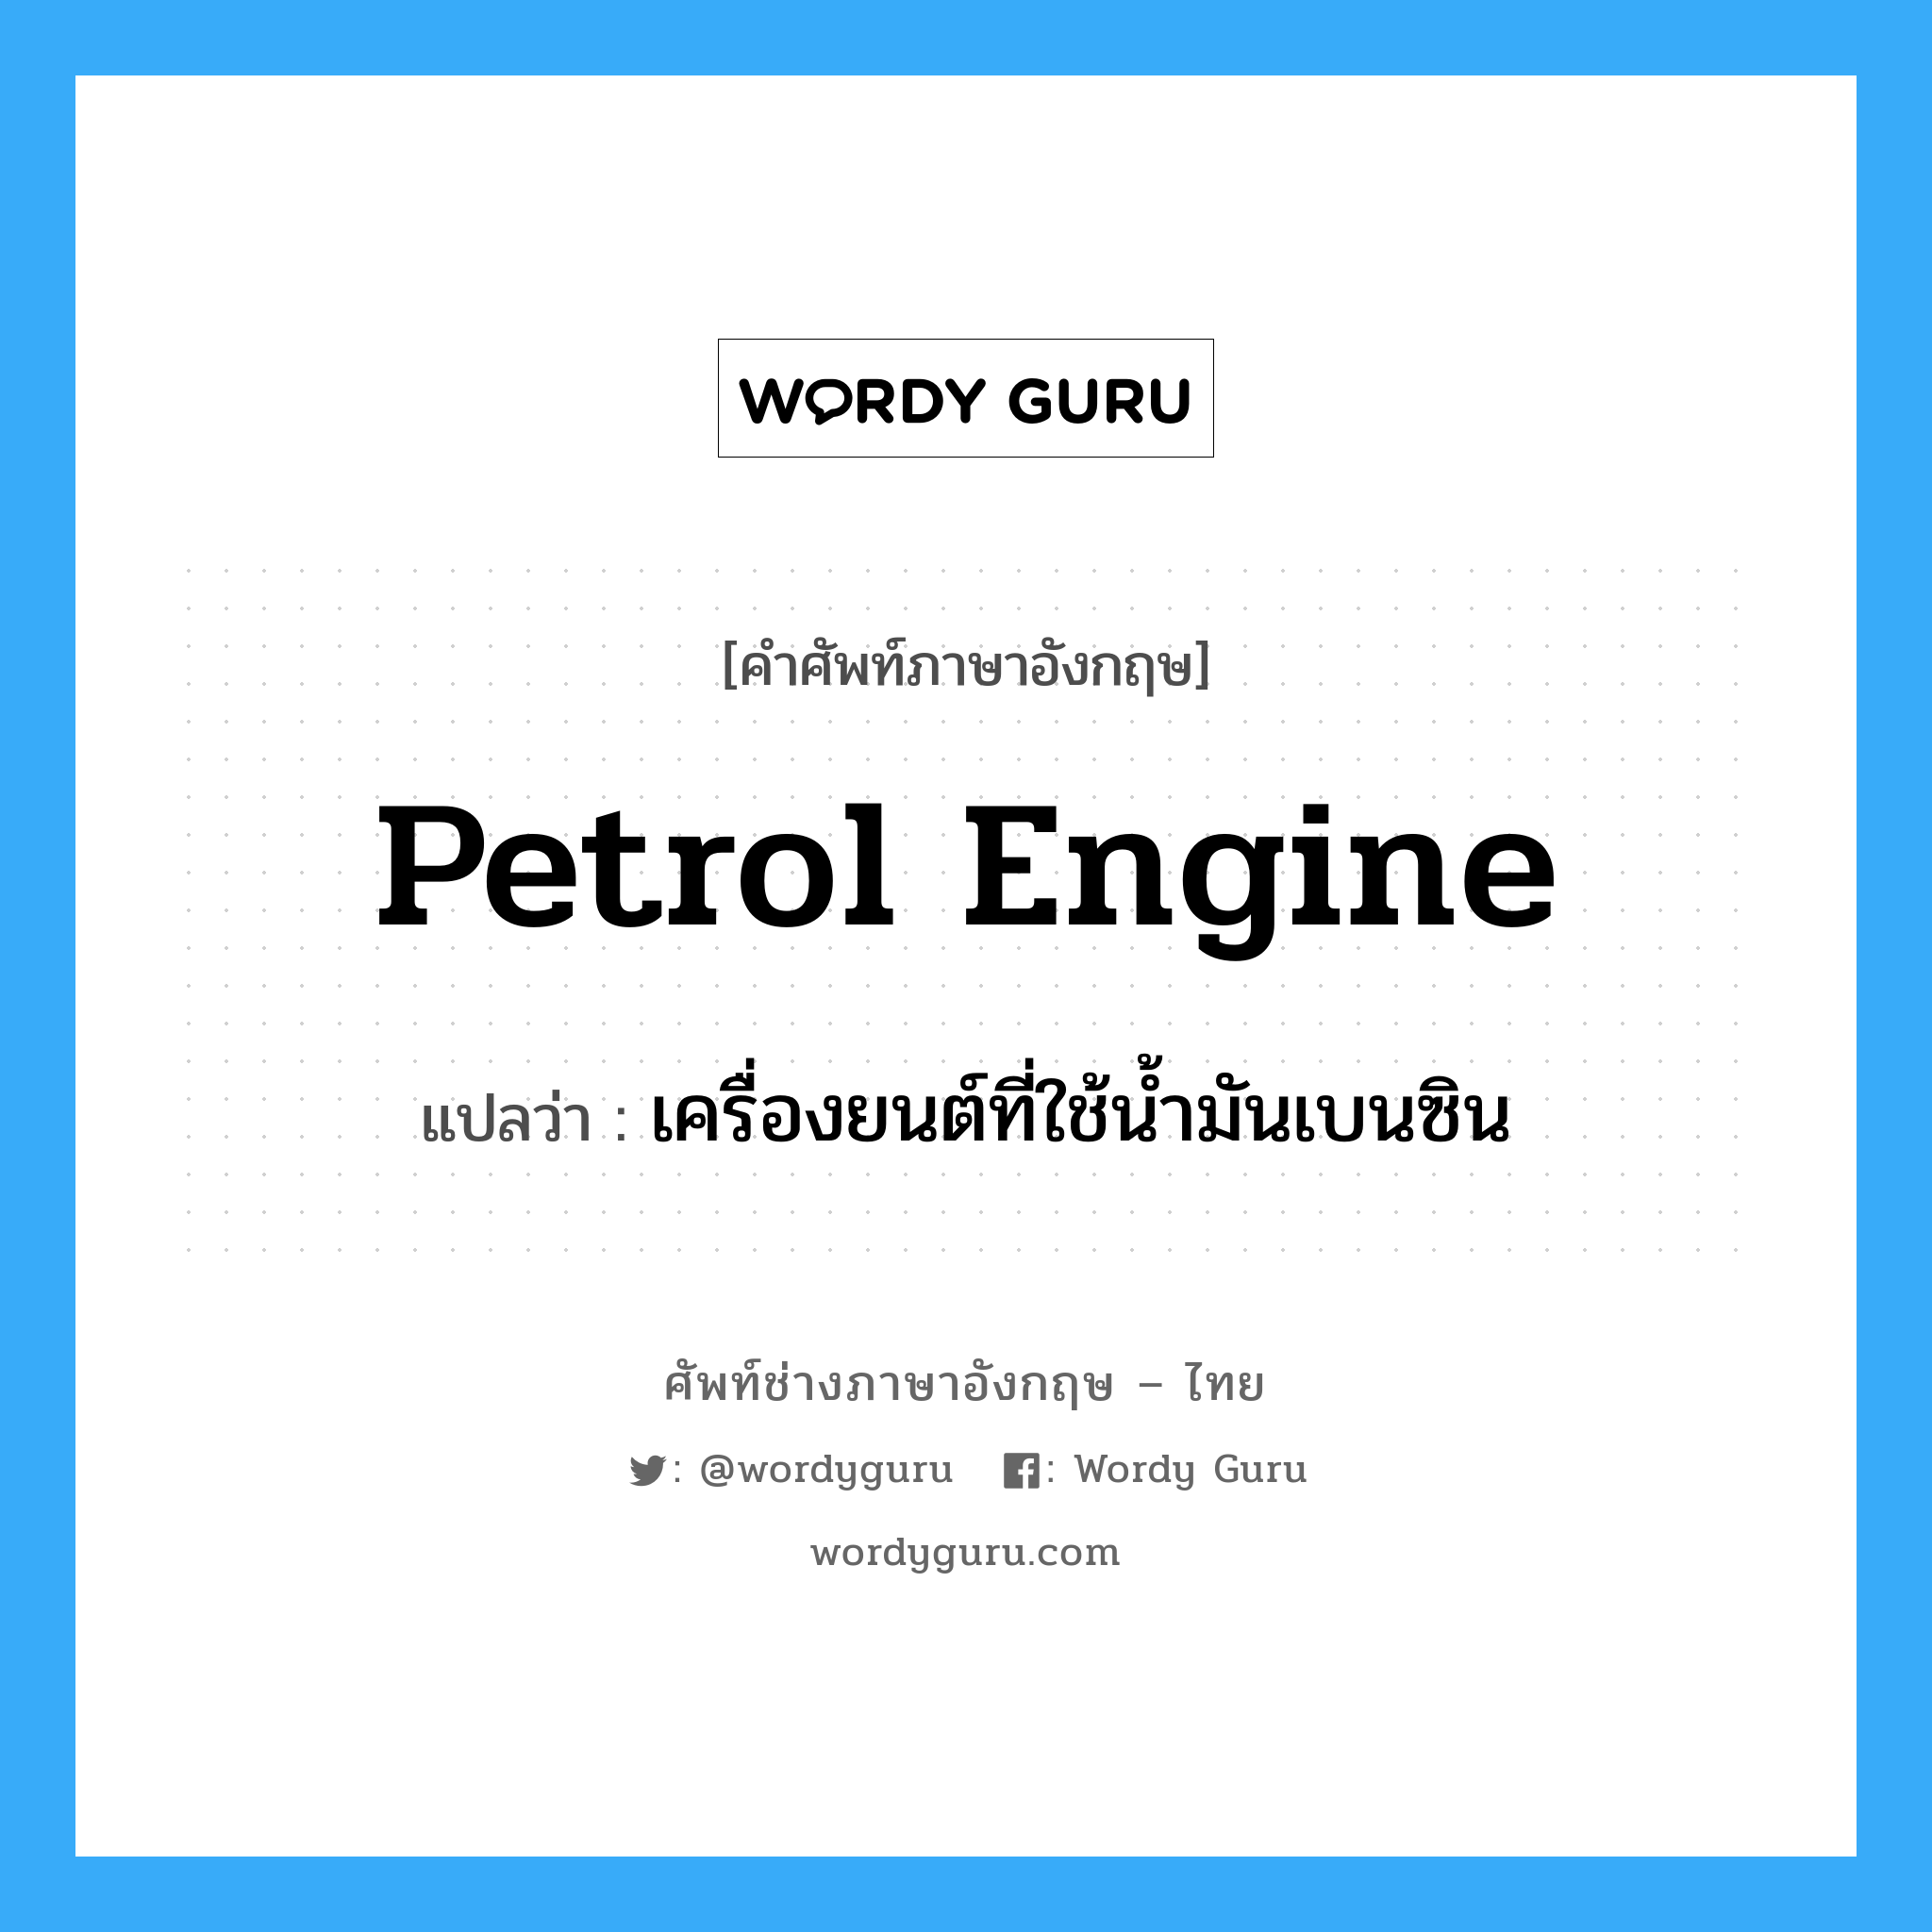 petrol engine แปลว่า?, คำศัพท์ช่างภาษาอังกฤษ - ไทย petrol engine คำศัพท์ภาษาอังกฤษ petrol engine แปลว่า เครื่องยนต์ที่ใช้น้ำมันเบนซิน